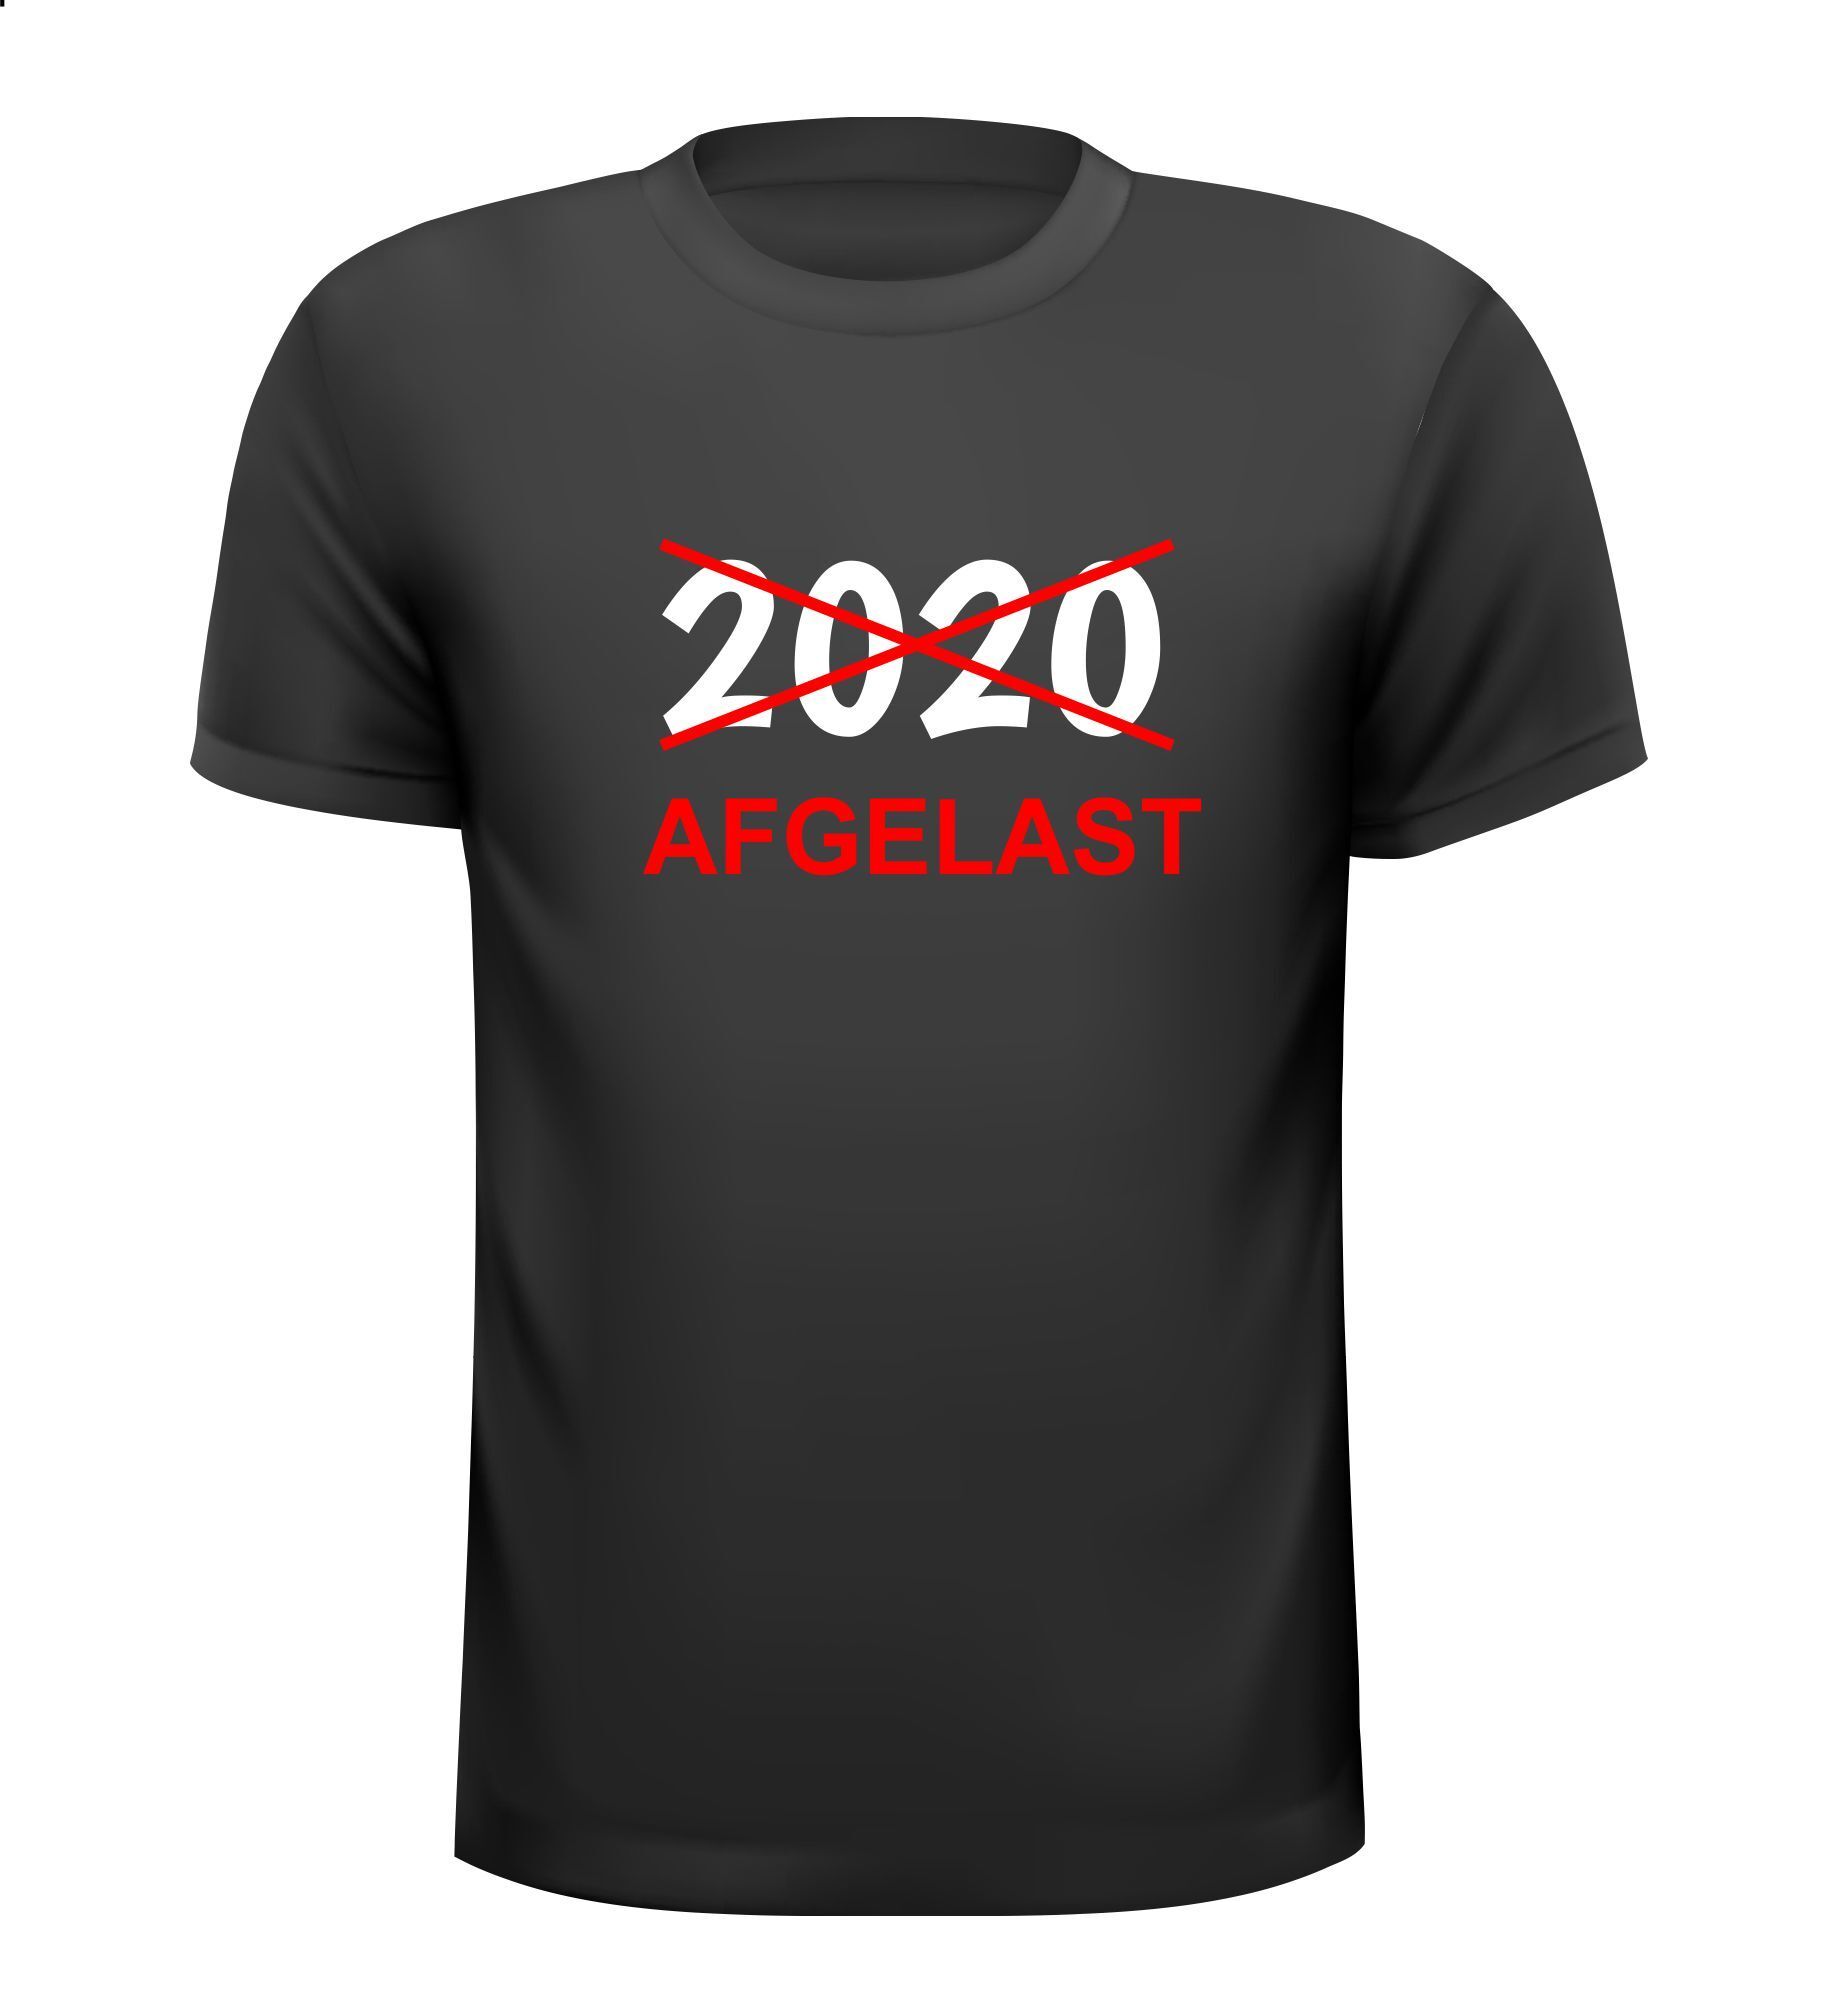 T-shirt 2020 afgelast corona virus